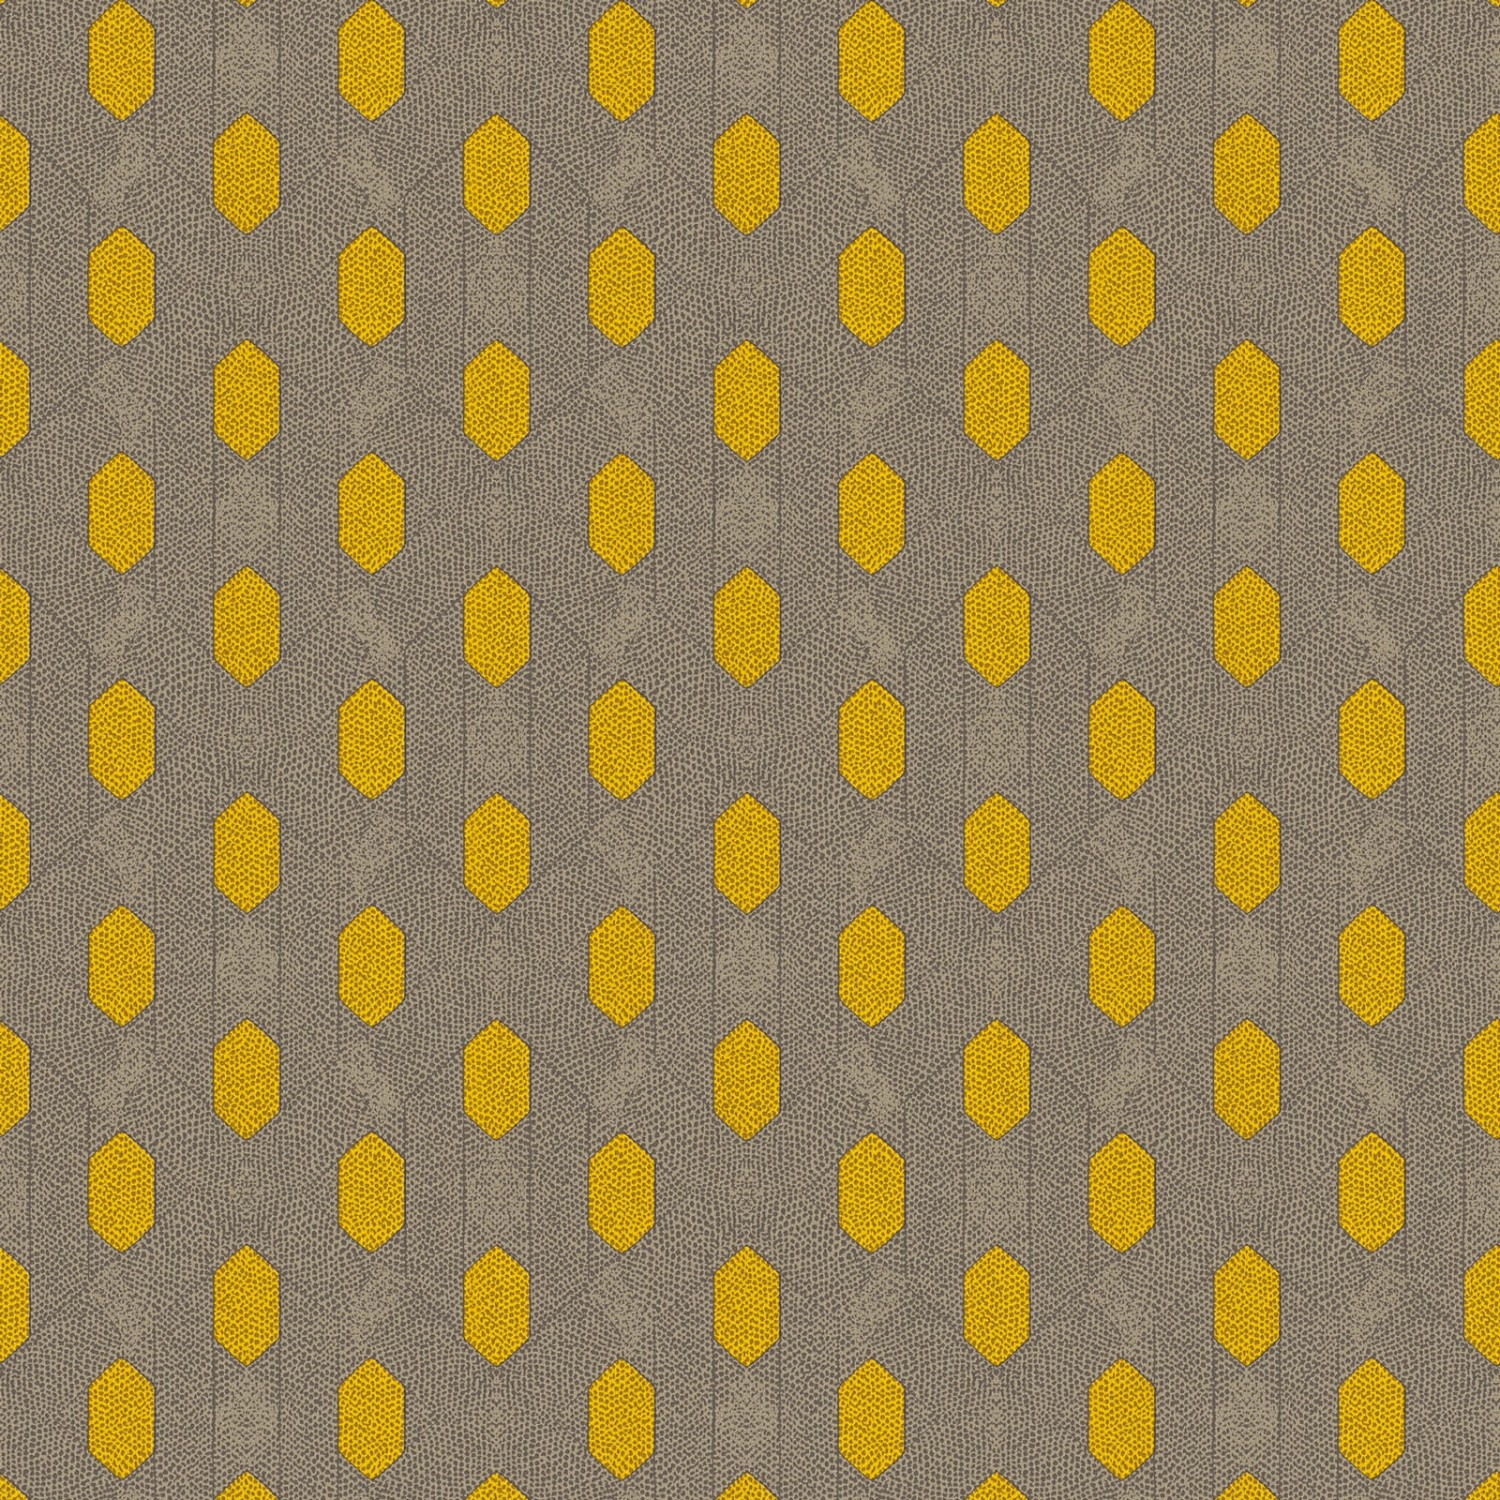 Bricoflor Retro Tapete in Beige und Senf Gelb 70er Jahre Tapete für Wohnzimmer und Schlafzimmer Nostalgie Vliestapete mit Geometrischem Muster von Bricoflor